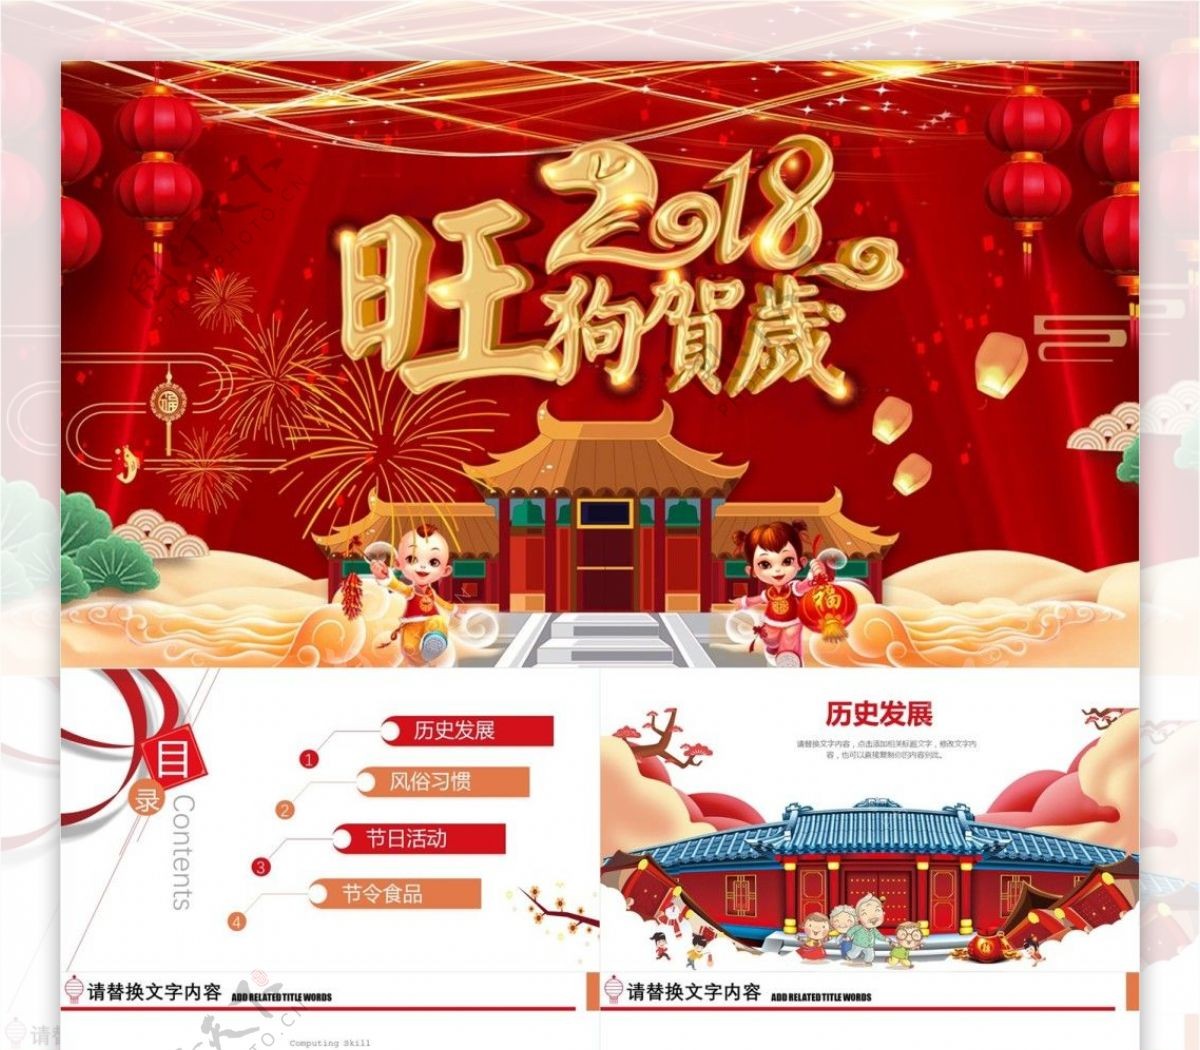 创意节日风春节文化习俗传统介绍PPT模板